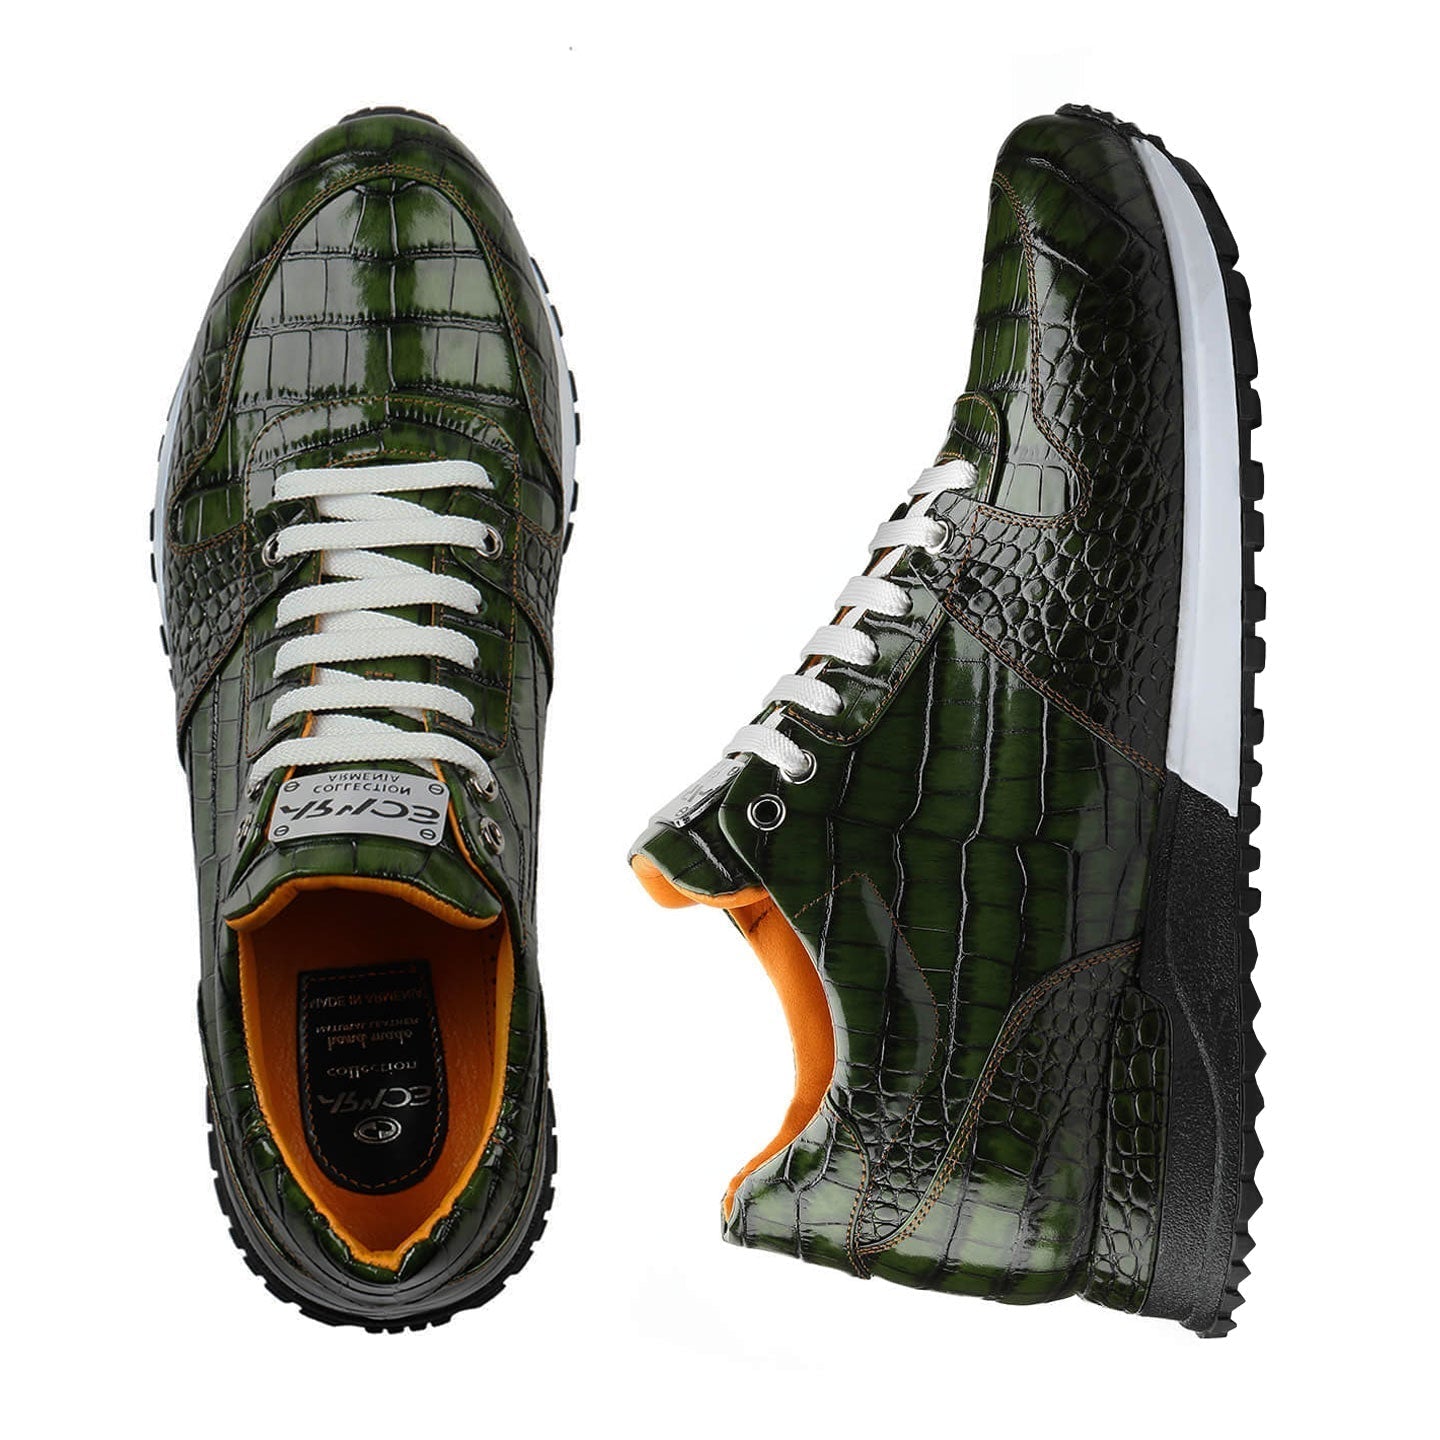 Croc-effect sneakers